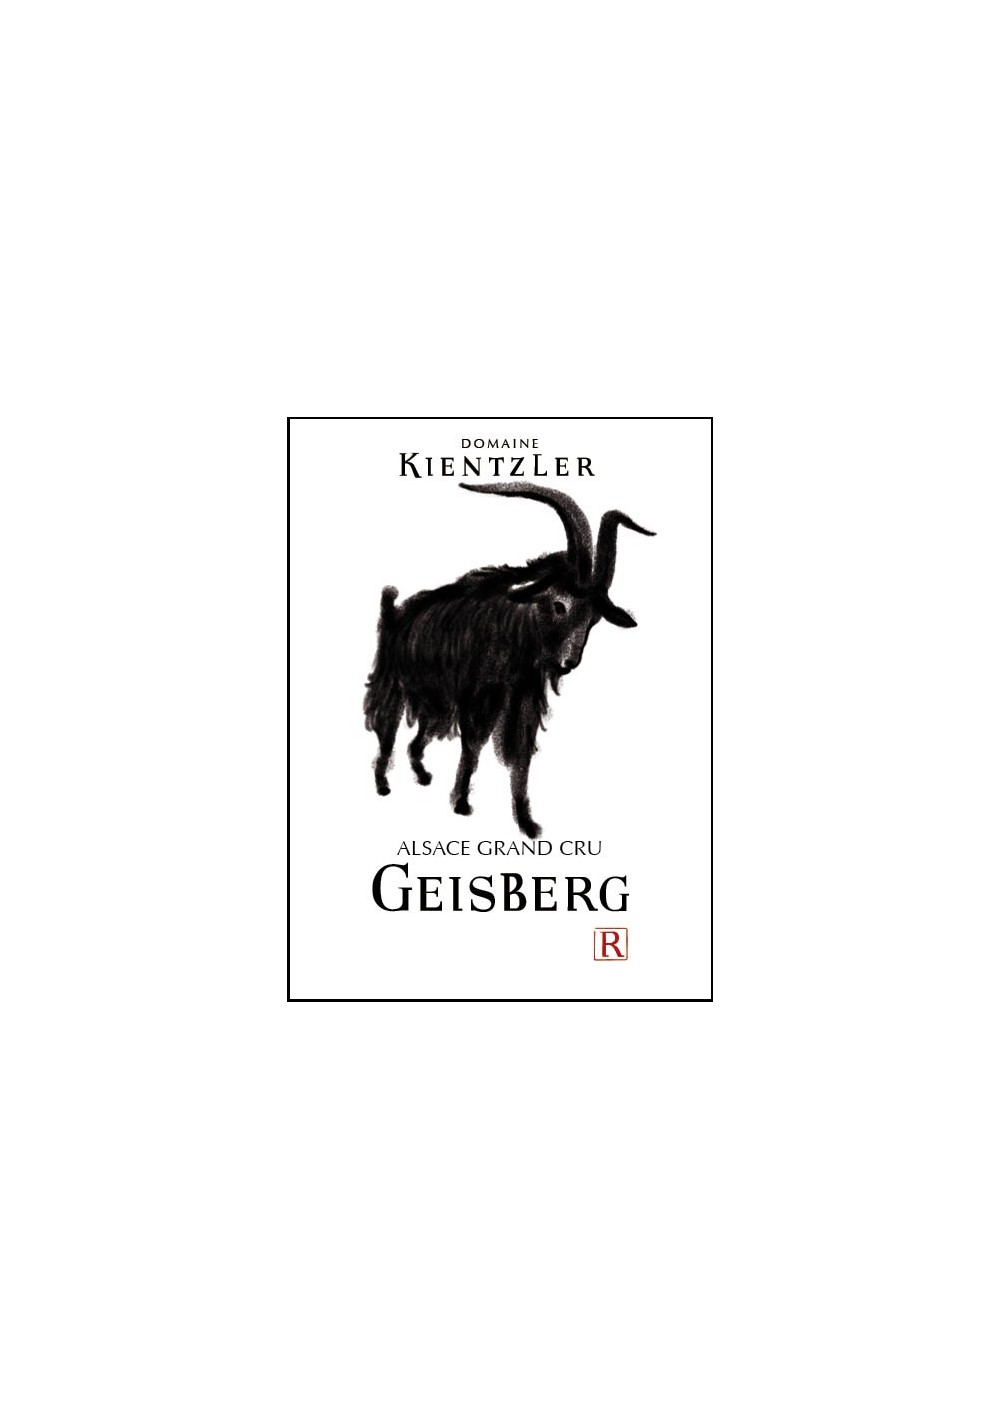 RIESLING GRAND CRU GEISBERG 2019 - 2